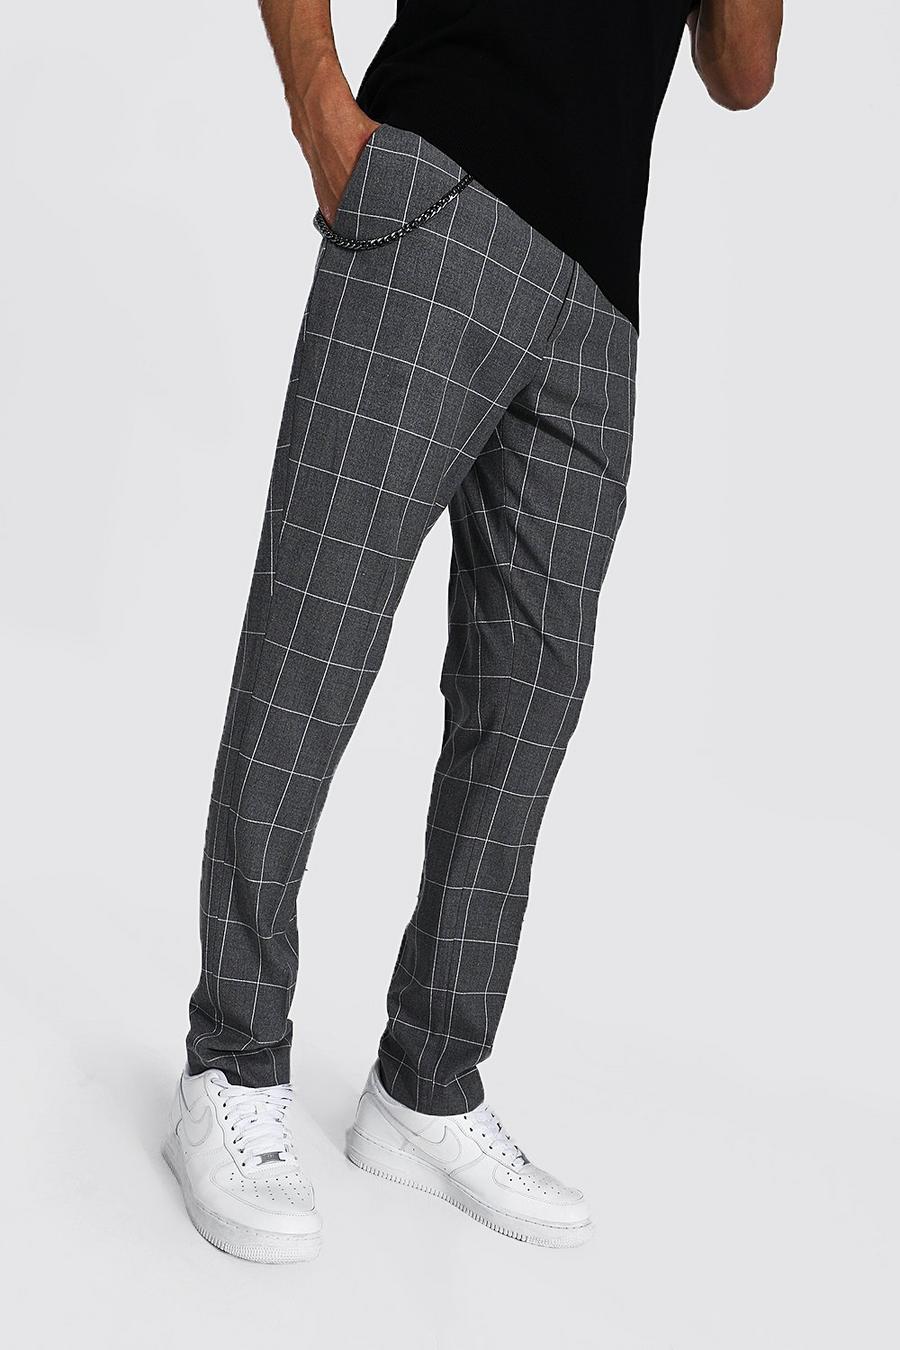 אפור מכנסי קרופ סקיני עם הדפס משבצות גדולות ושרשרת לגברים גבוהים image number 1